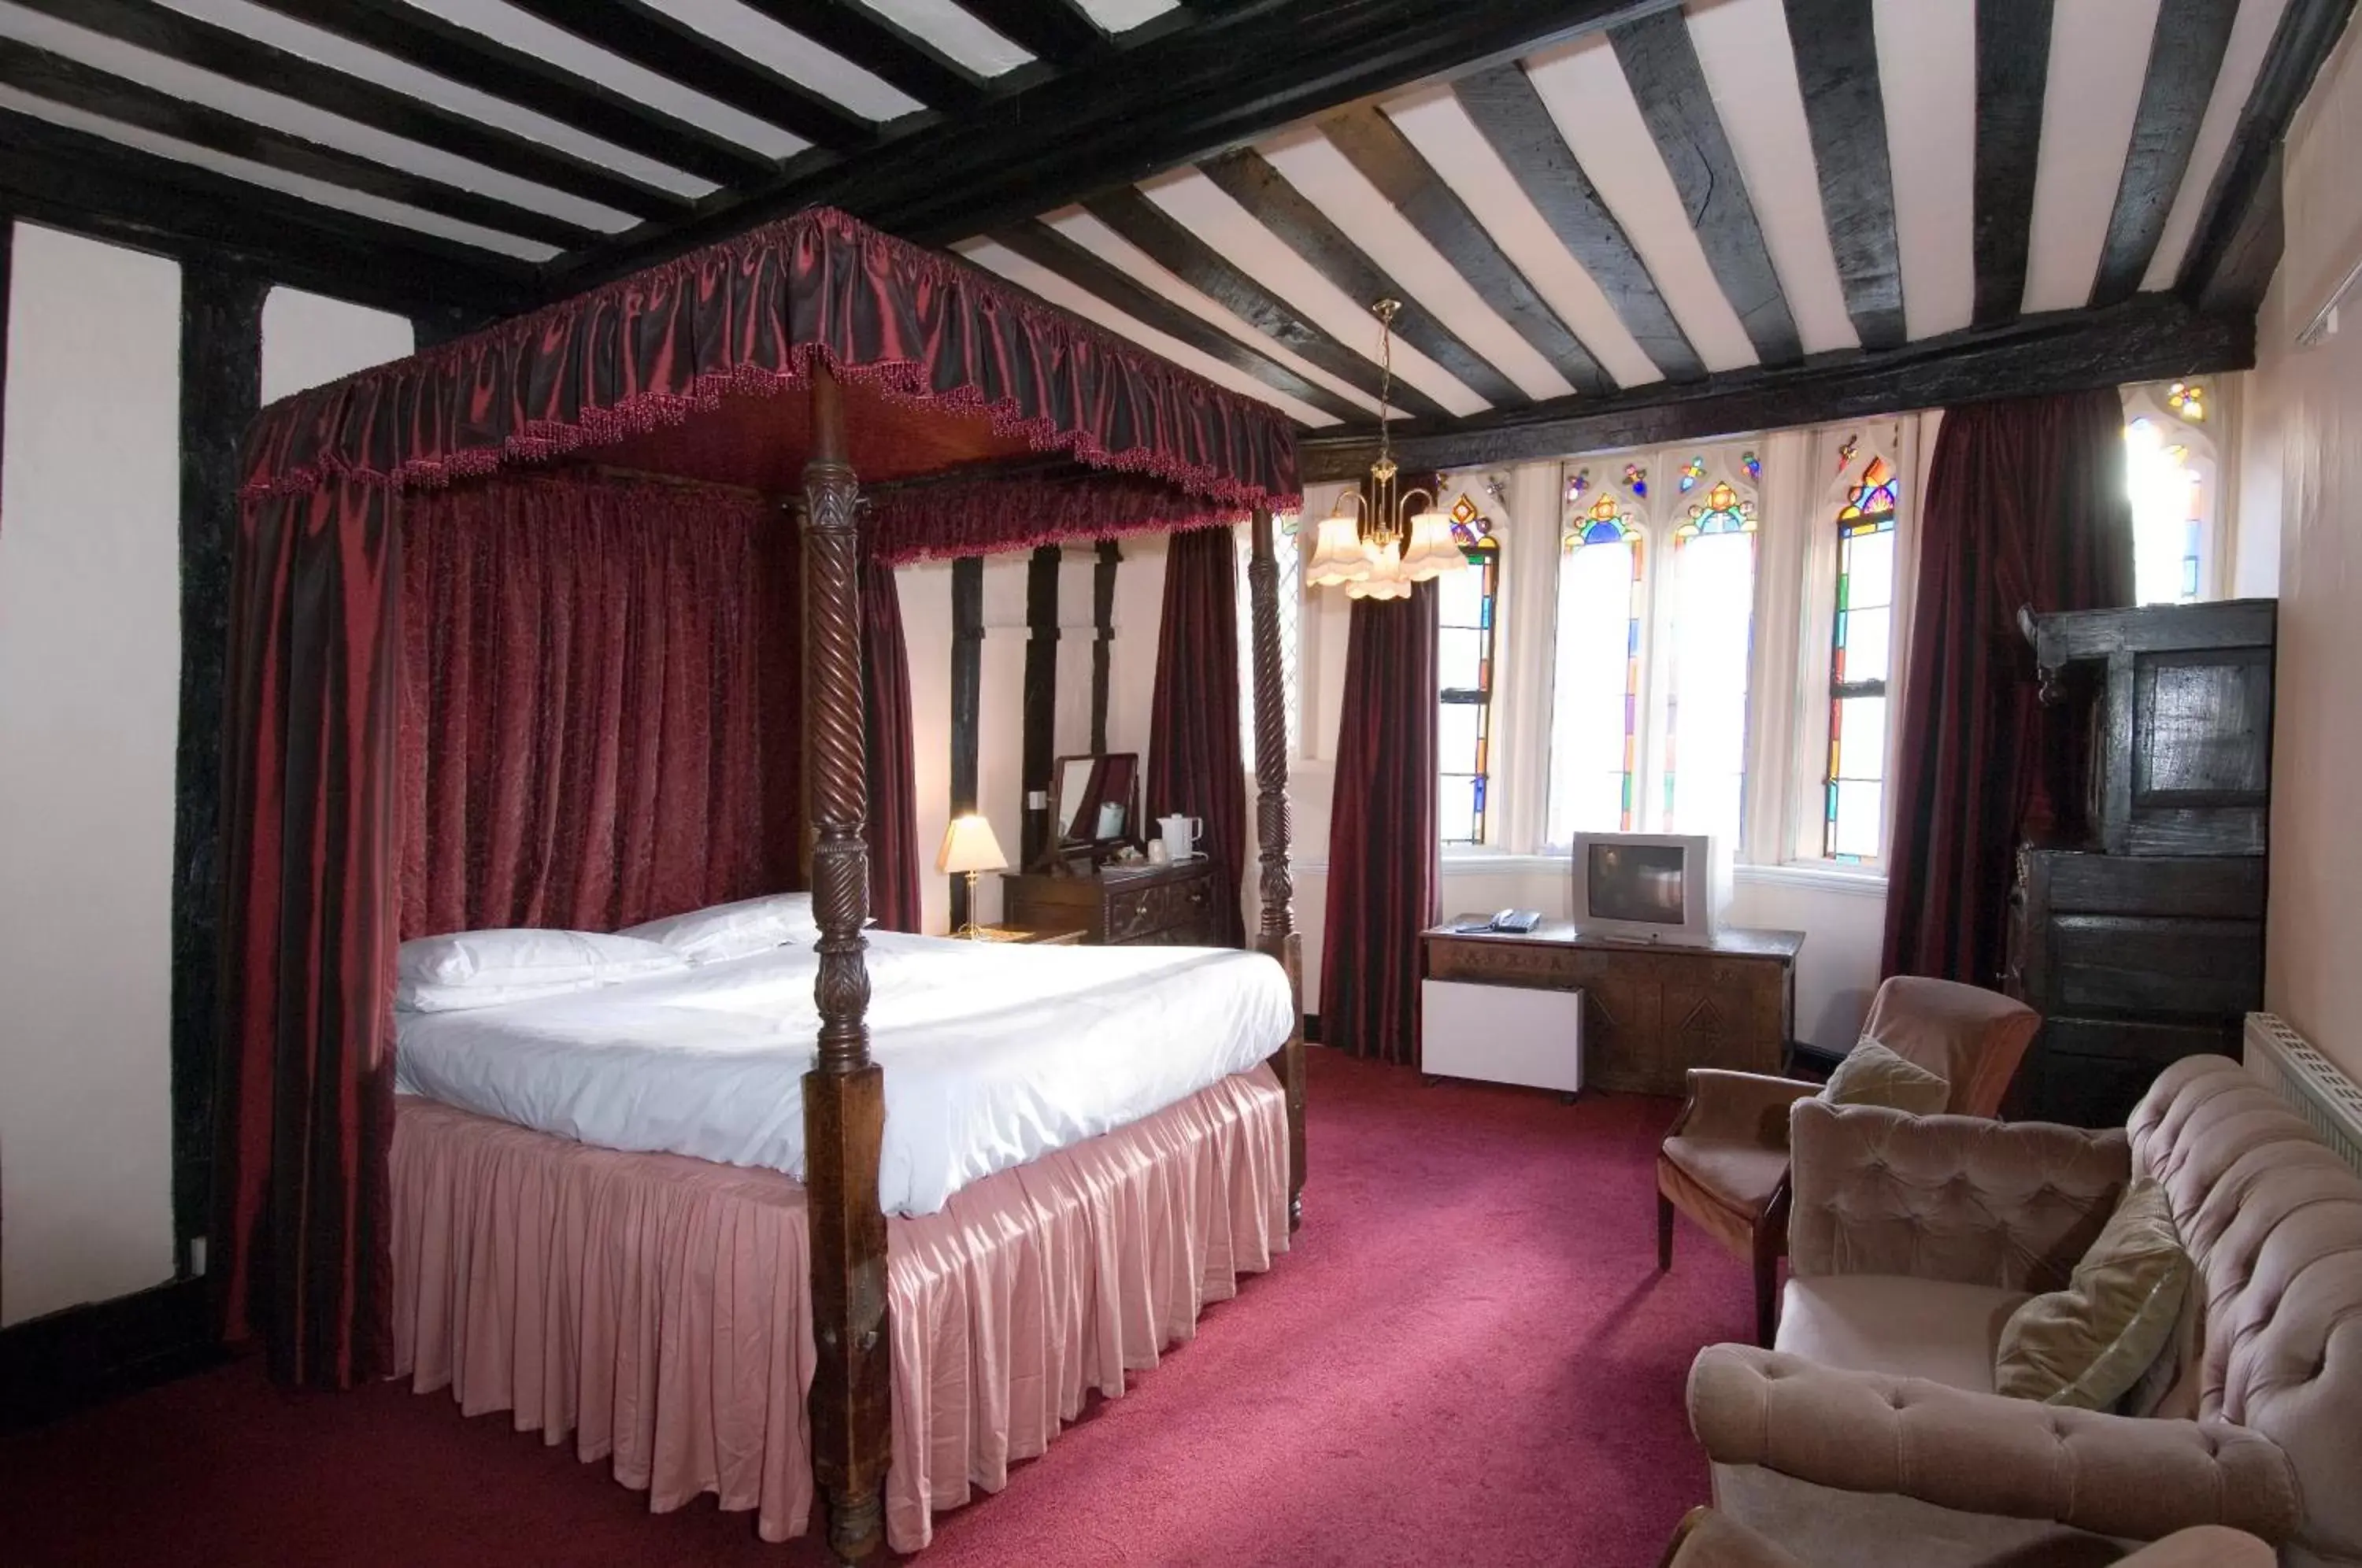 Bedroom in George & Pilgrims Hotel